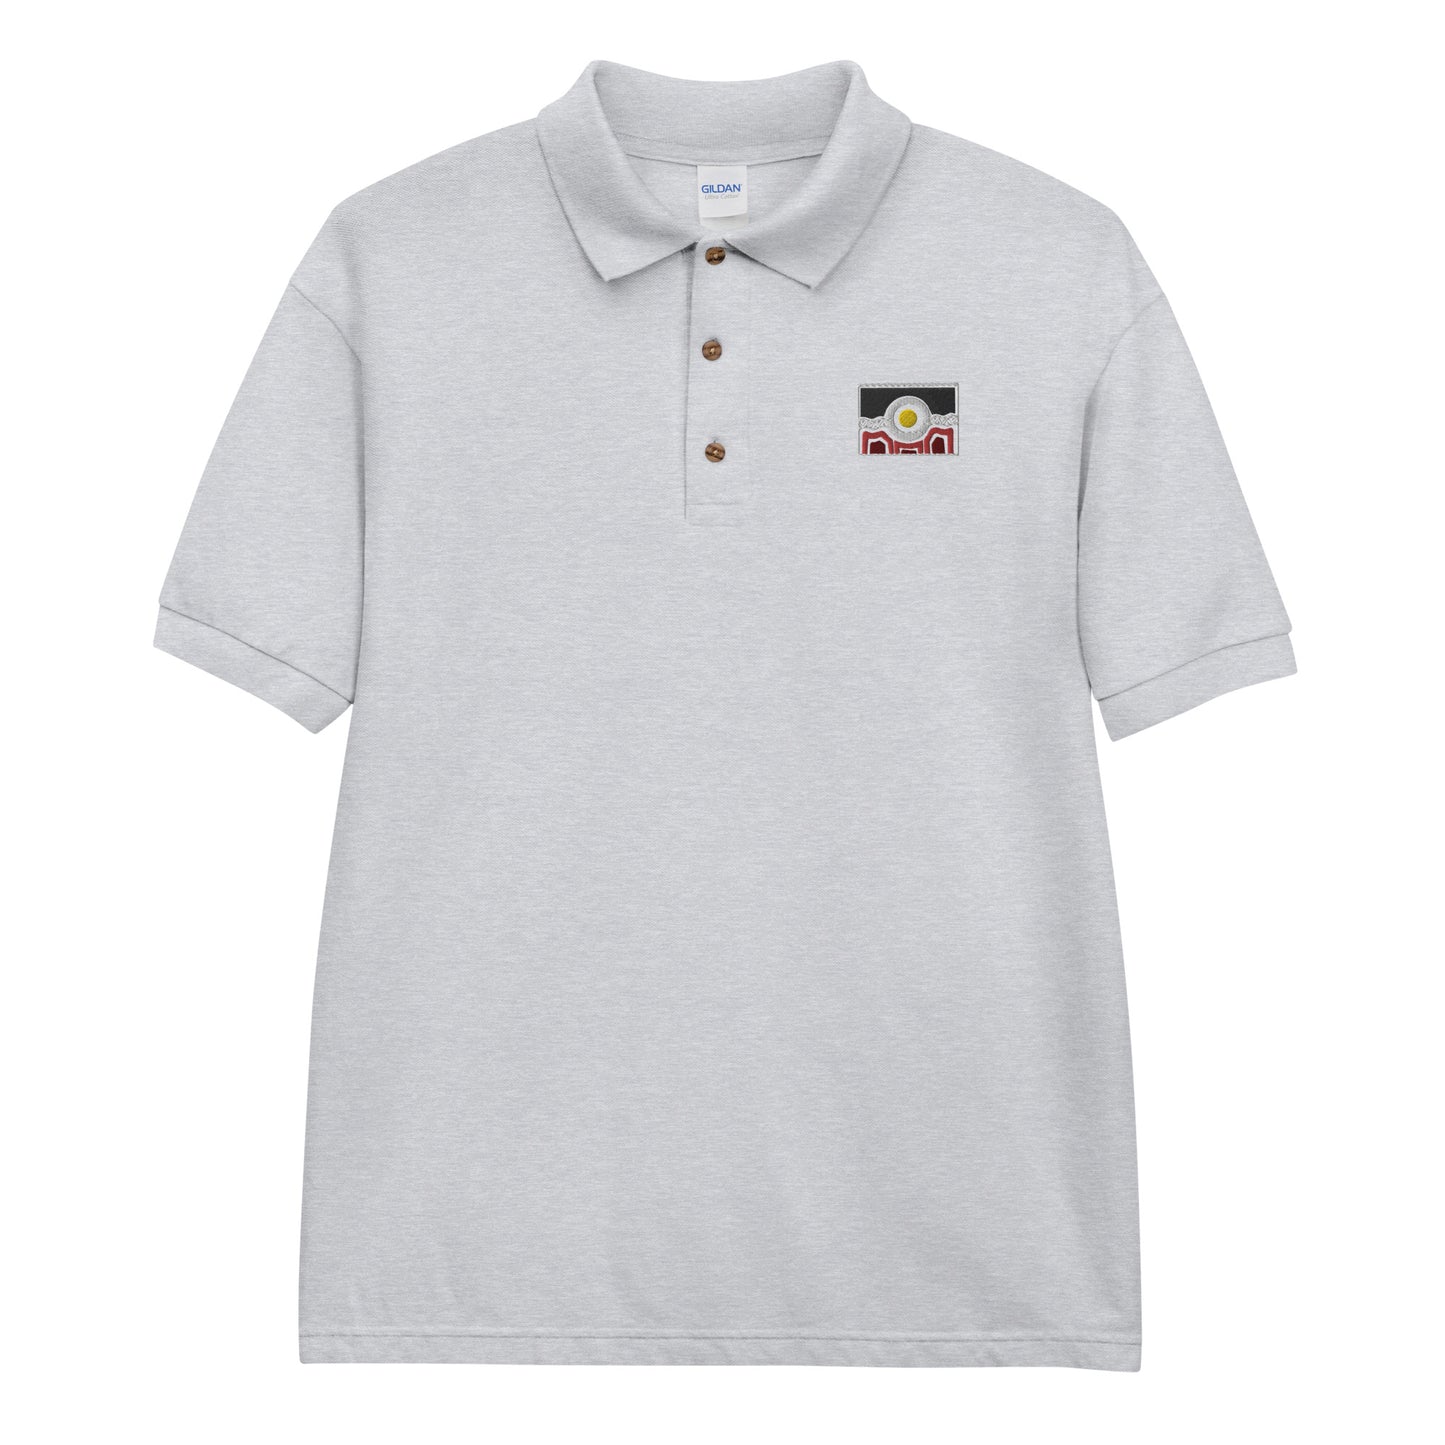 Flag Embroidered Polo Shirt